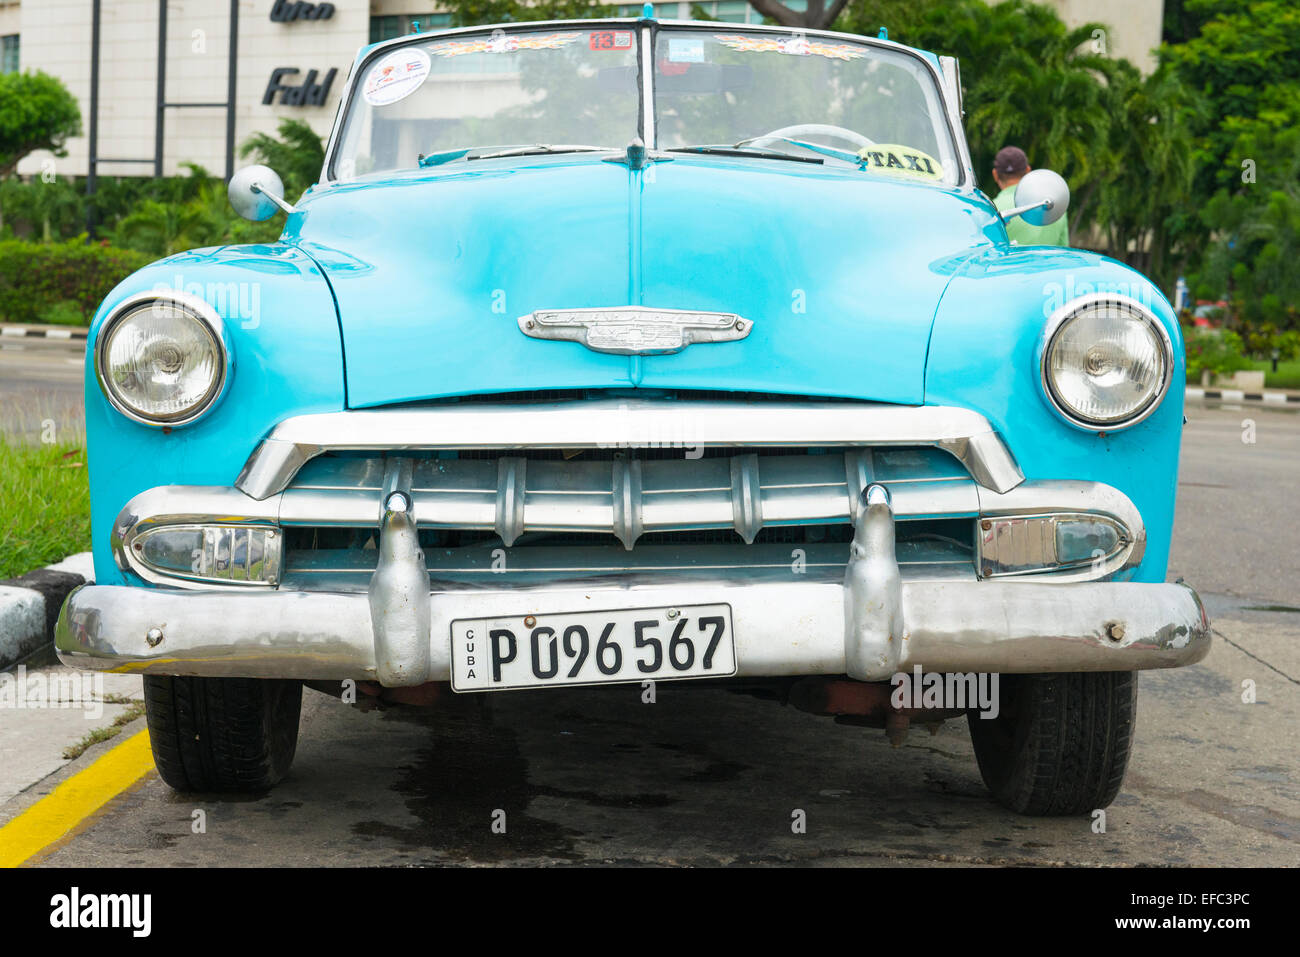 Cuba Havana Habana Nuevo Vedado Plaza de la Revolucion Revolution old classic vintage 1950's American car bright blue Chevrolet Stock Photo